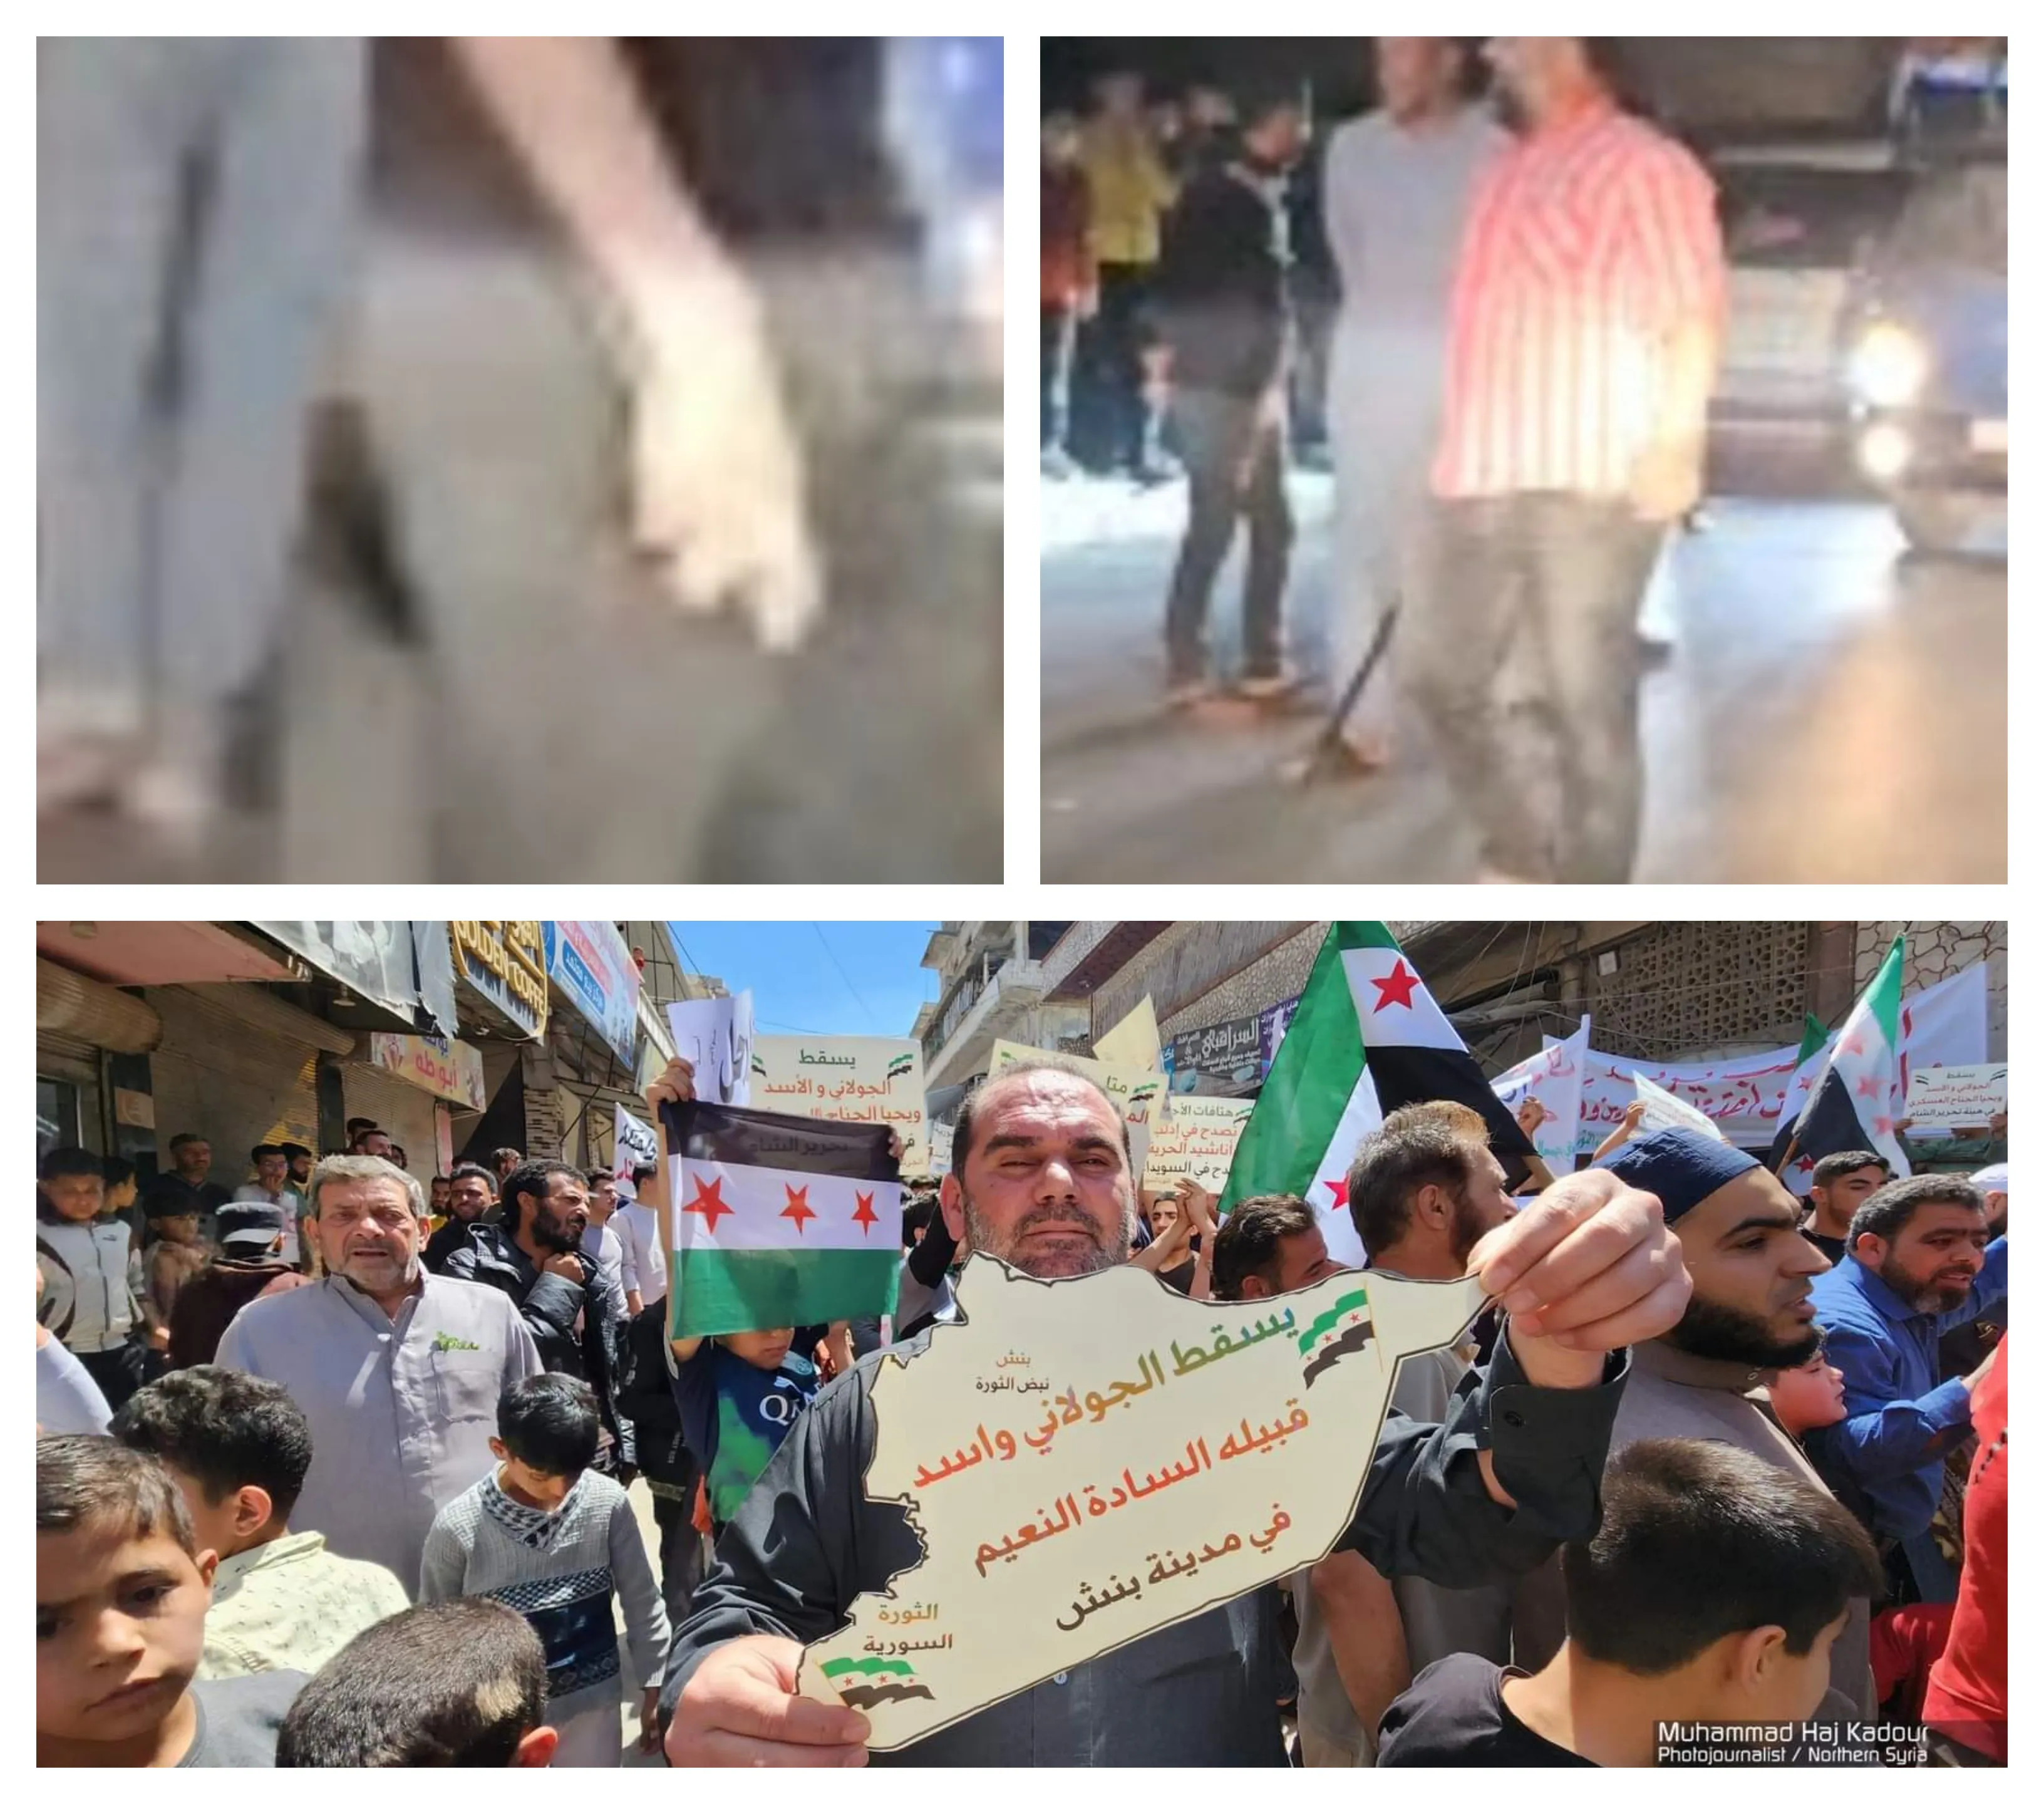 شبيحة "الجـ ـولاني" تعتدي على متظاهرين بينهم نشطاء في مظاهرات ضدها بريف إدلب